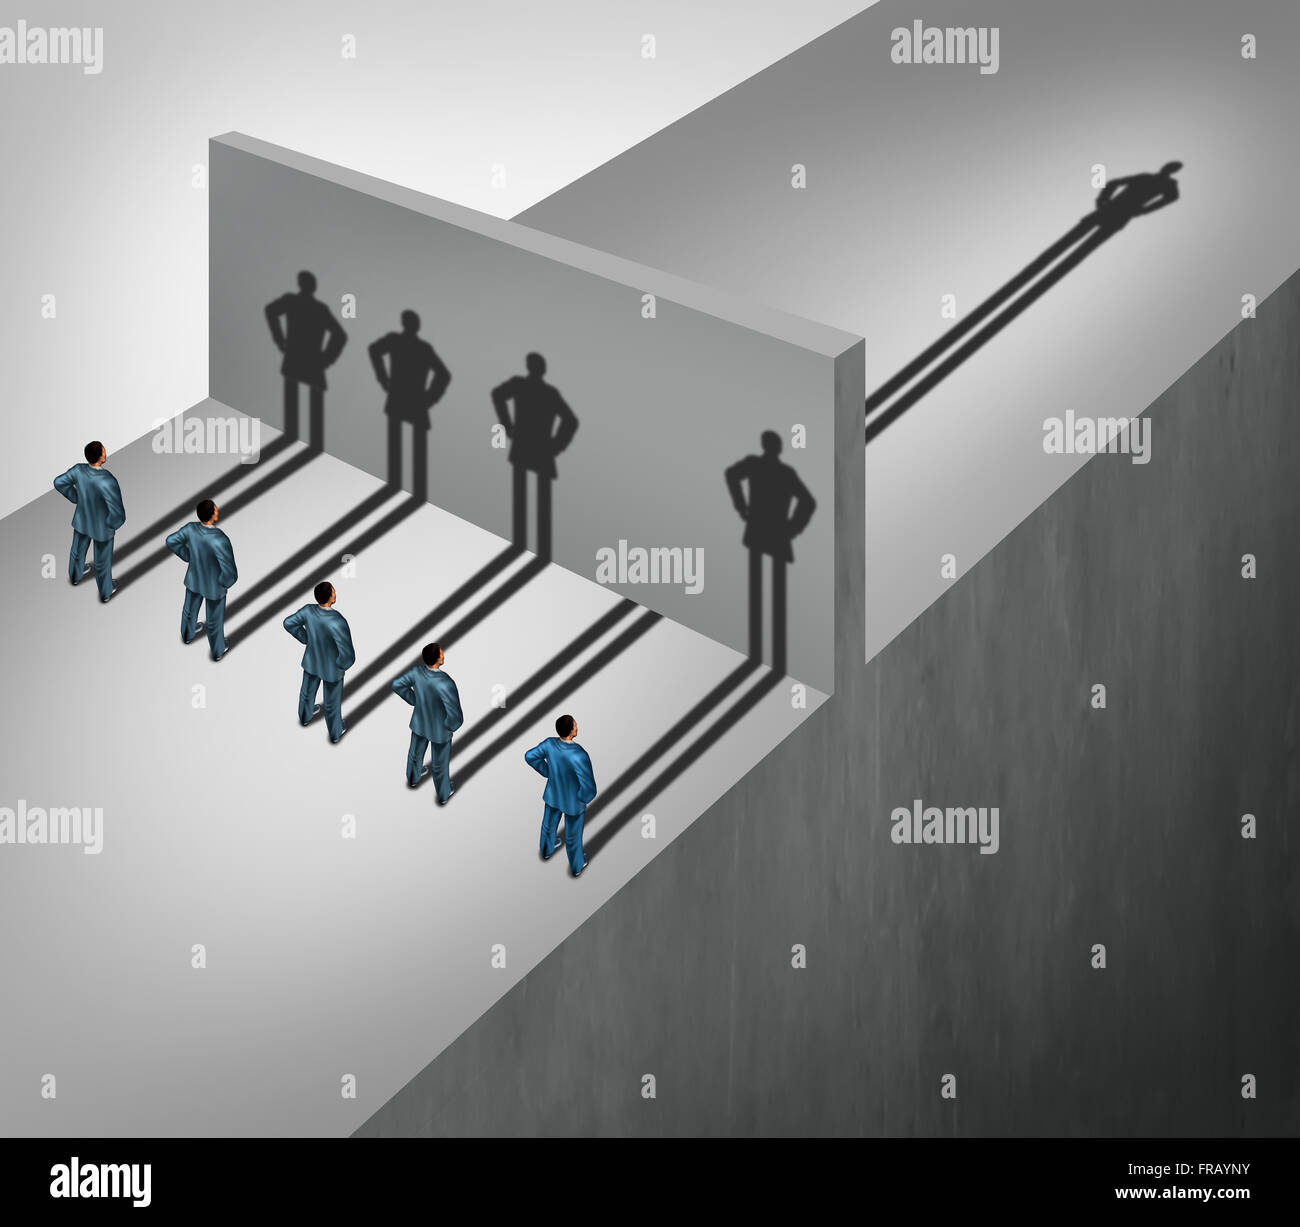 Abilità di leadership concetto aziendale come un gruppo di persone che gettano ombre fermarsi in corrispondenza di una parete ma un imprenditore individuale ha un'ombra balzo in avanti attraverso l'ostacolo come una capacità di successo metafora. Foto Stock